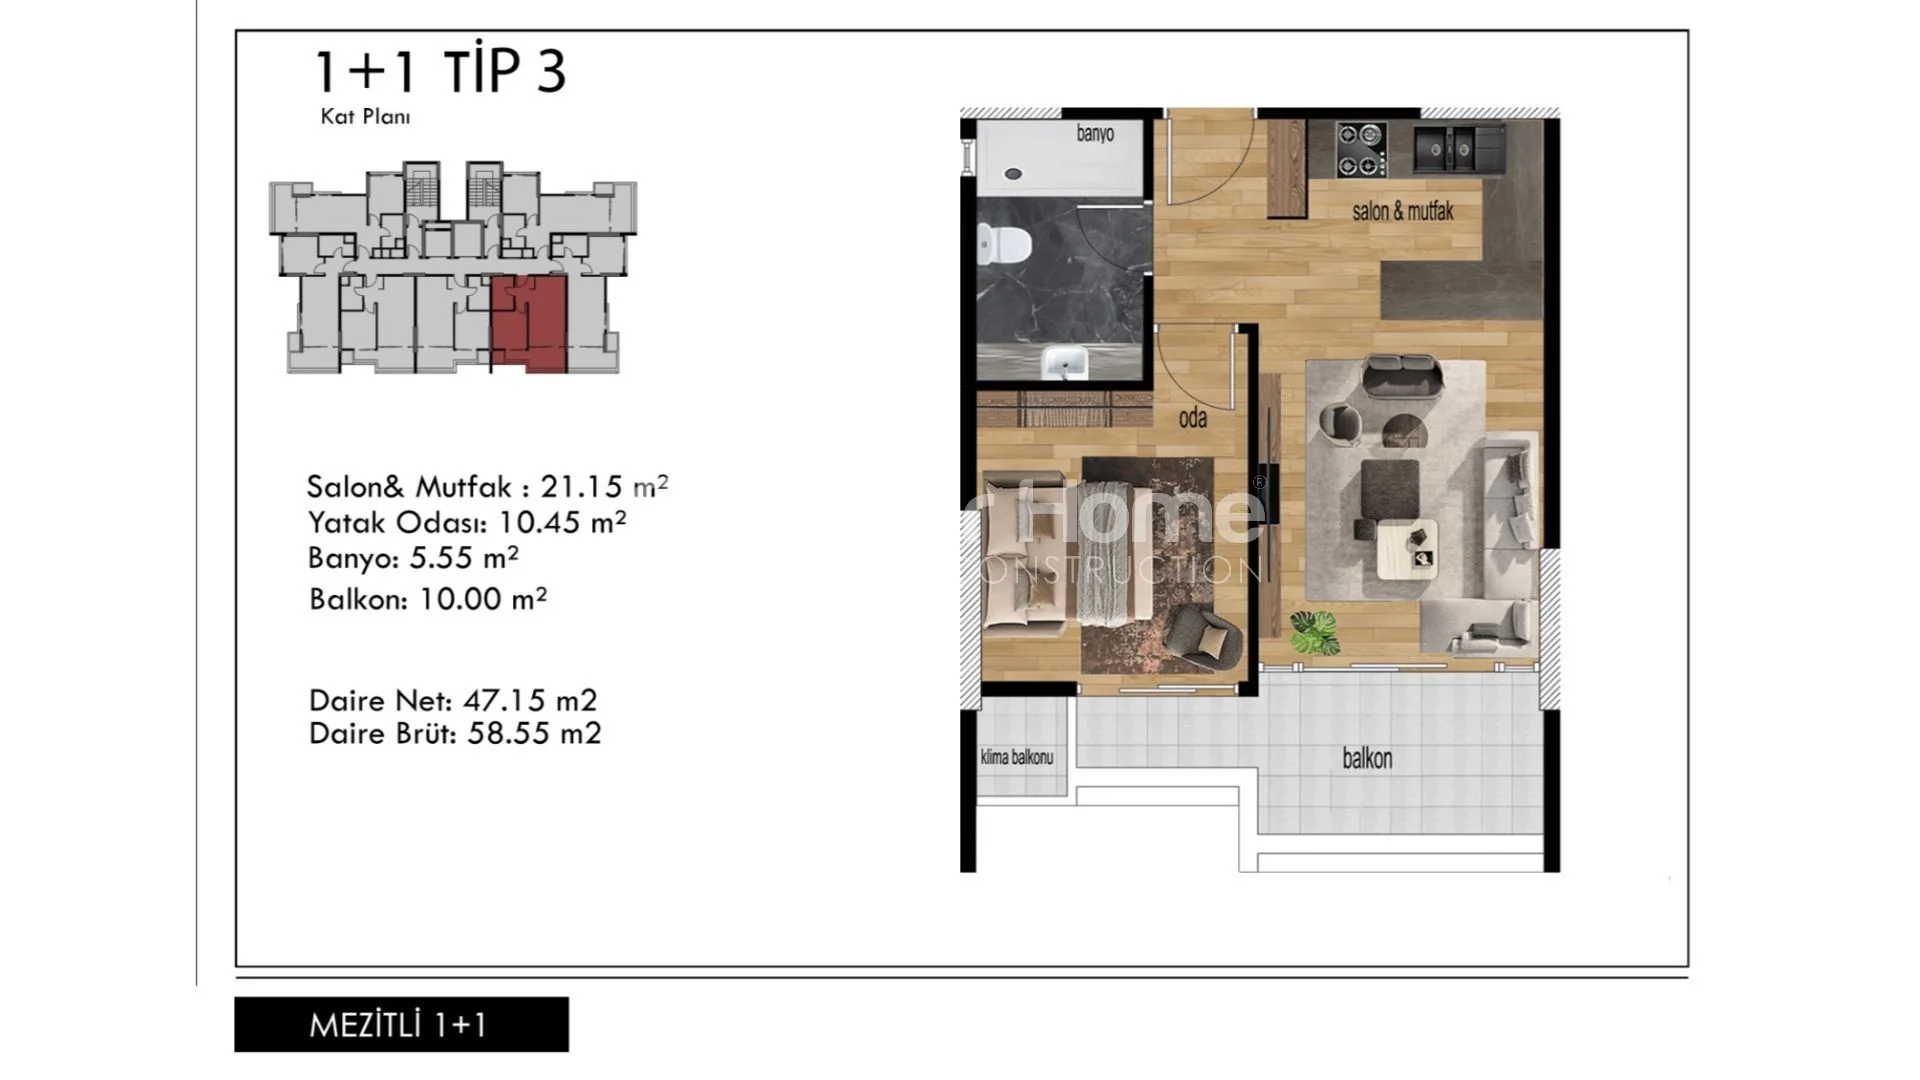 Prekrasni apartmani modernog dizajna u Mezitli, Mersin plan - 26